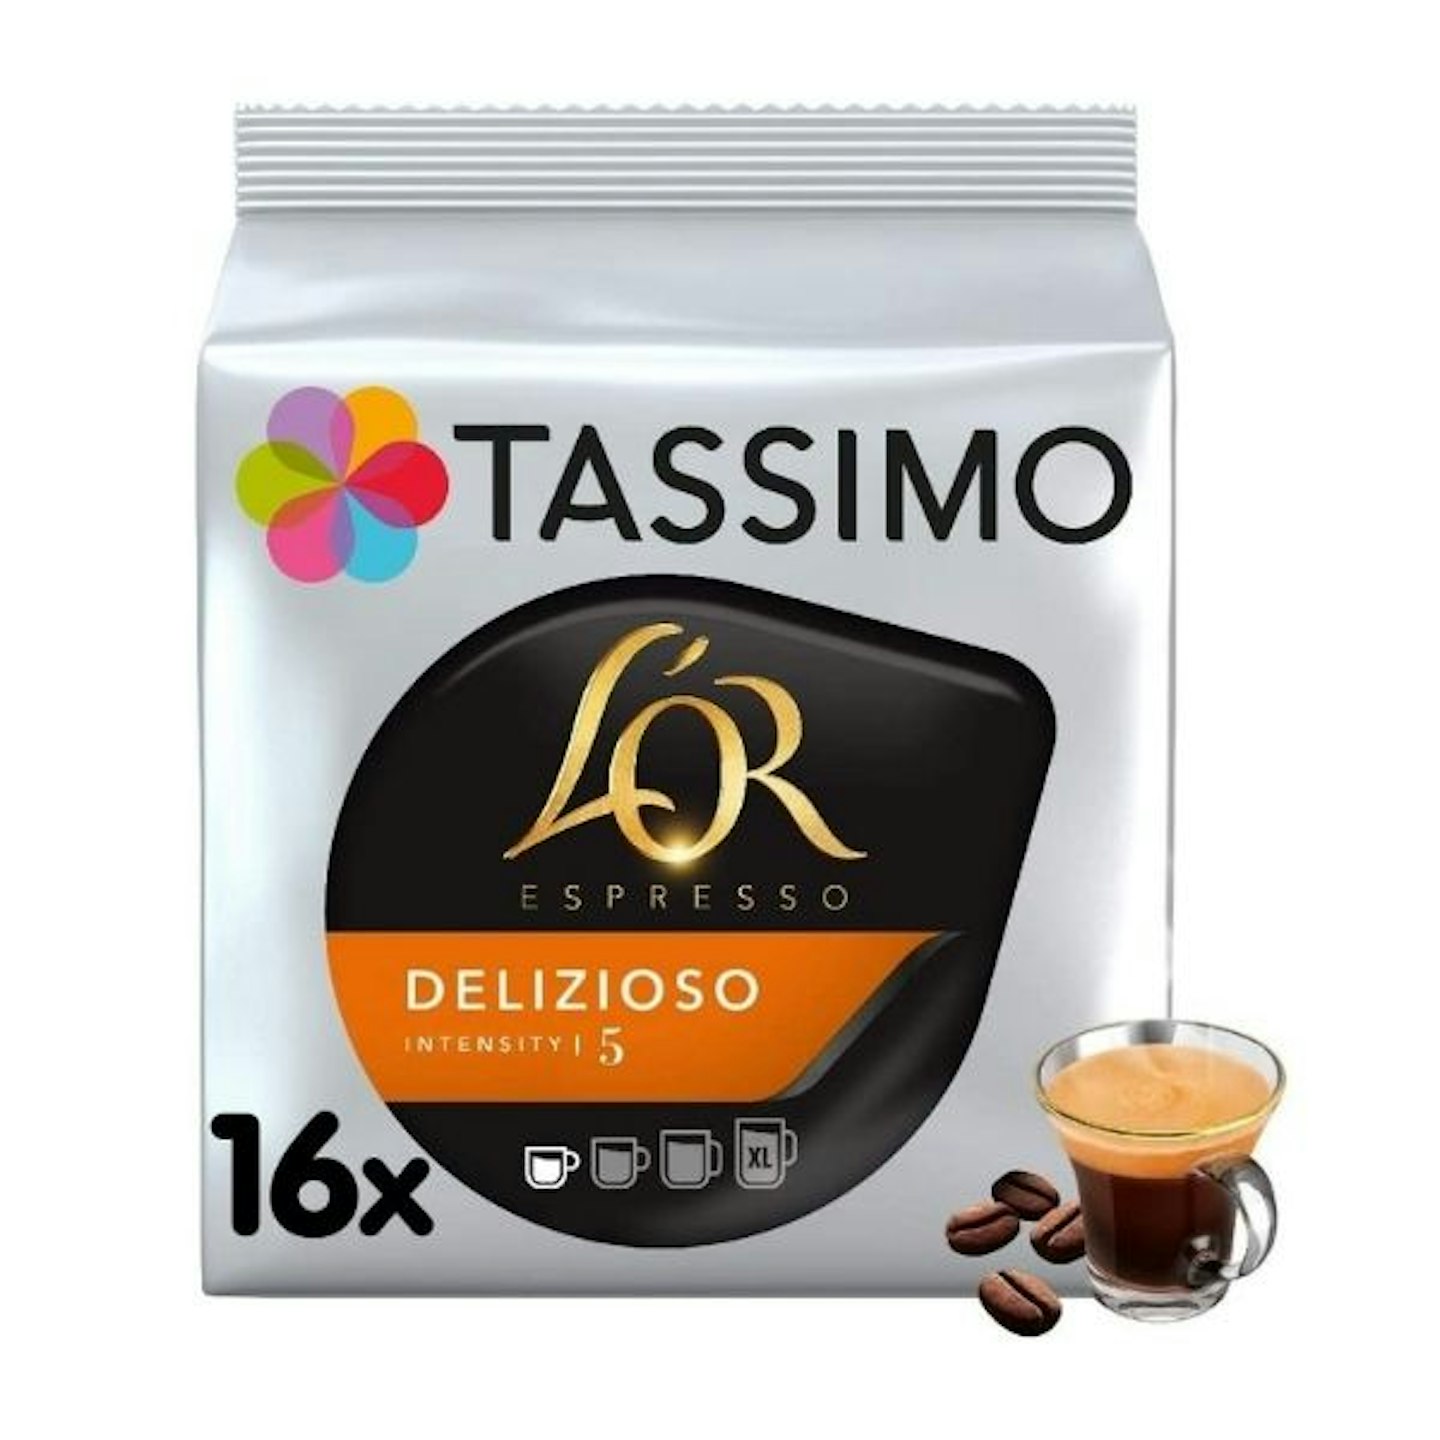 Tassimo L'OR Espresso Delizioso Coffee Pods